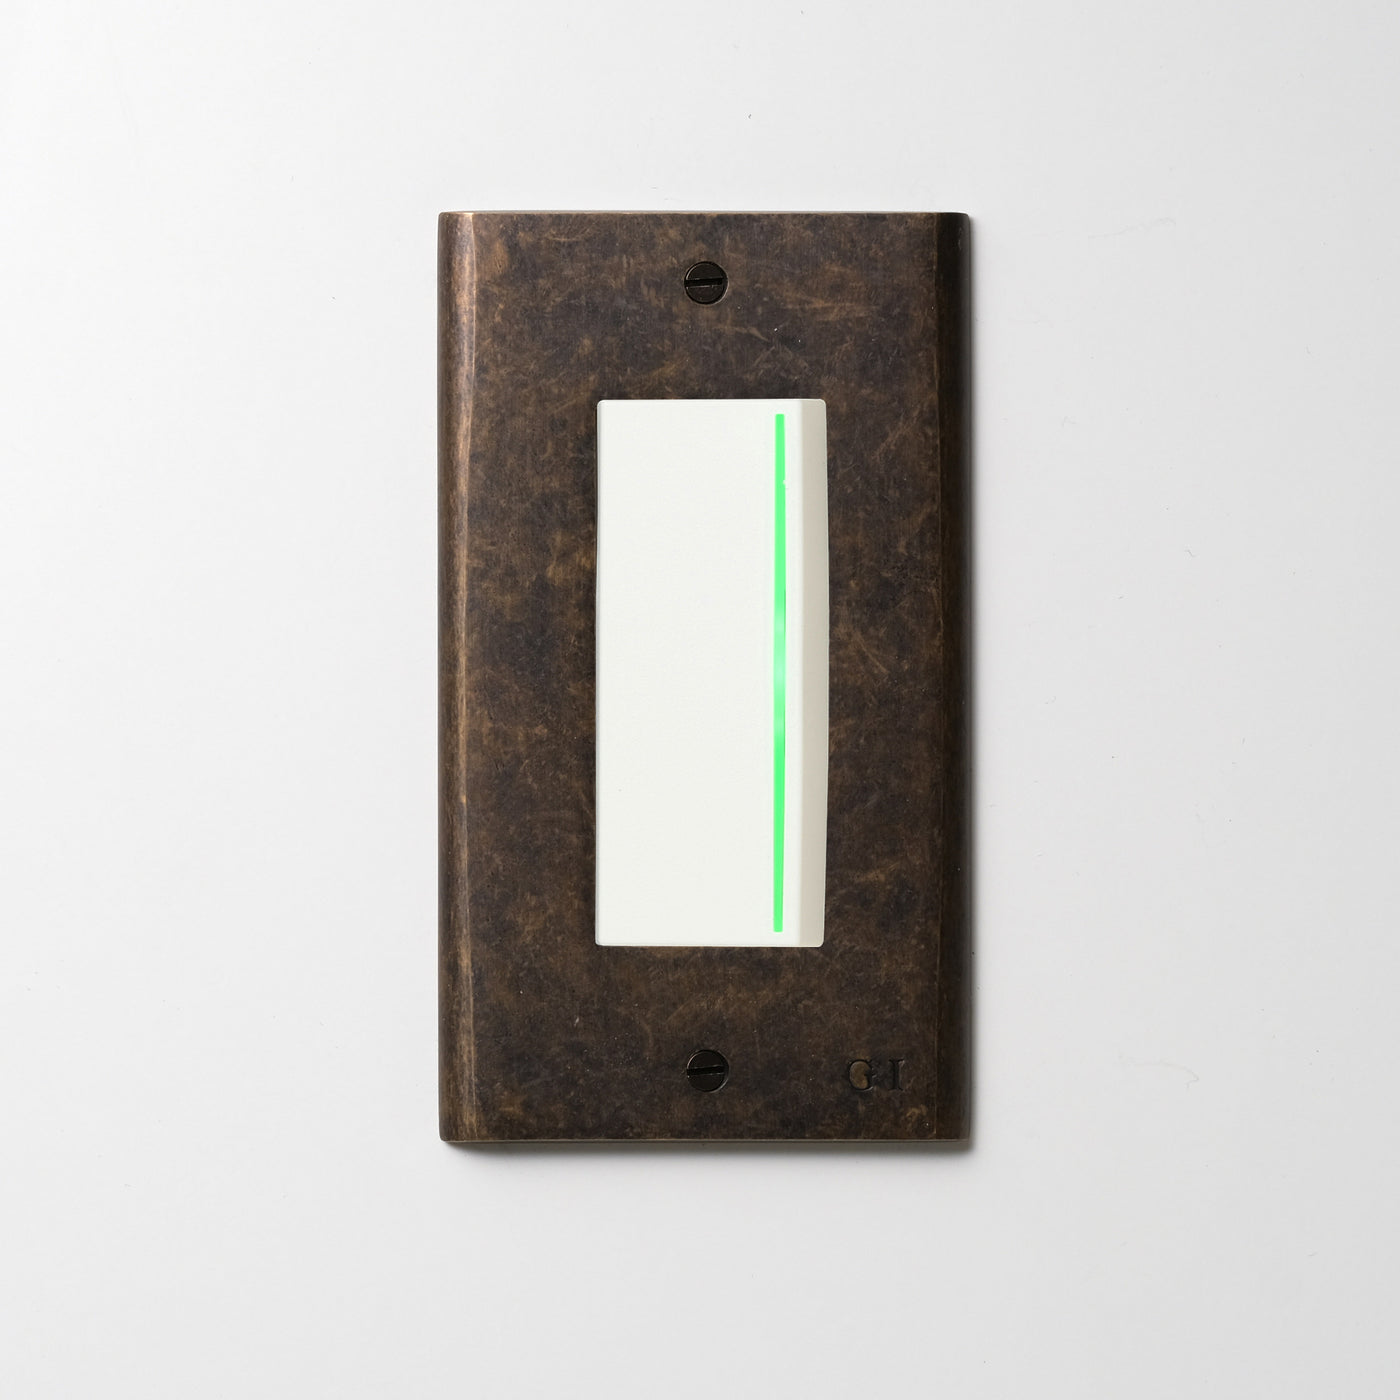 真鍮エイジング プレート <br>+ NK 片切、3路ガイドランプ（グリーン）付スイッチシングル  ホワイト